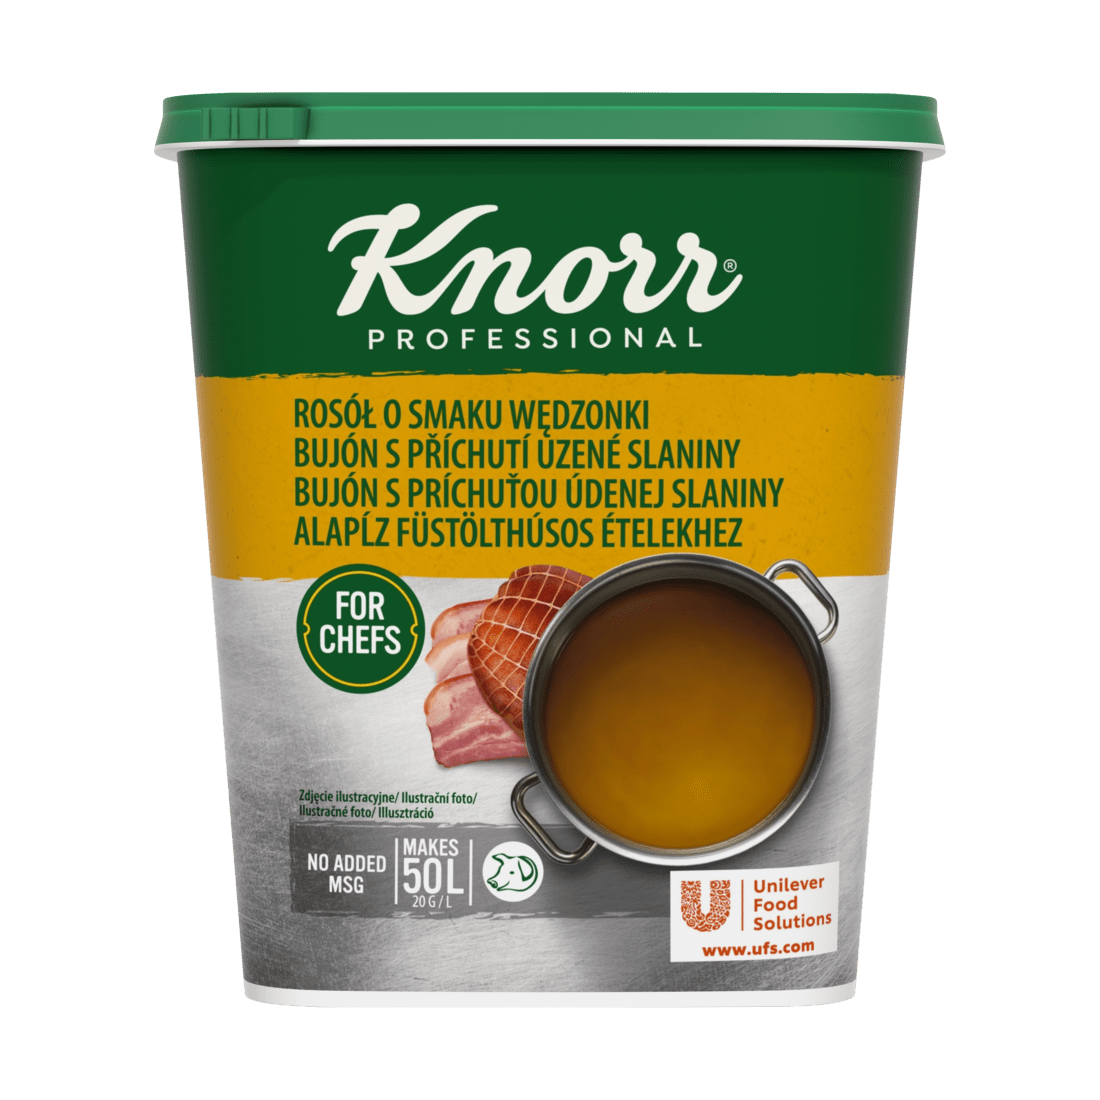 KNORR Professional Bujón s příchutí uzené slaniny 1kg